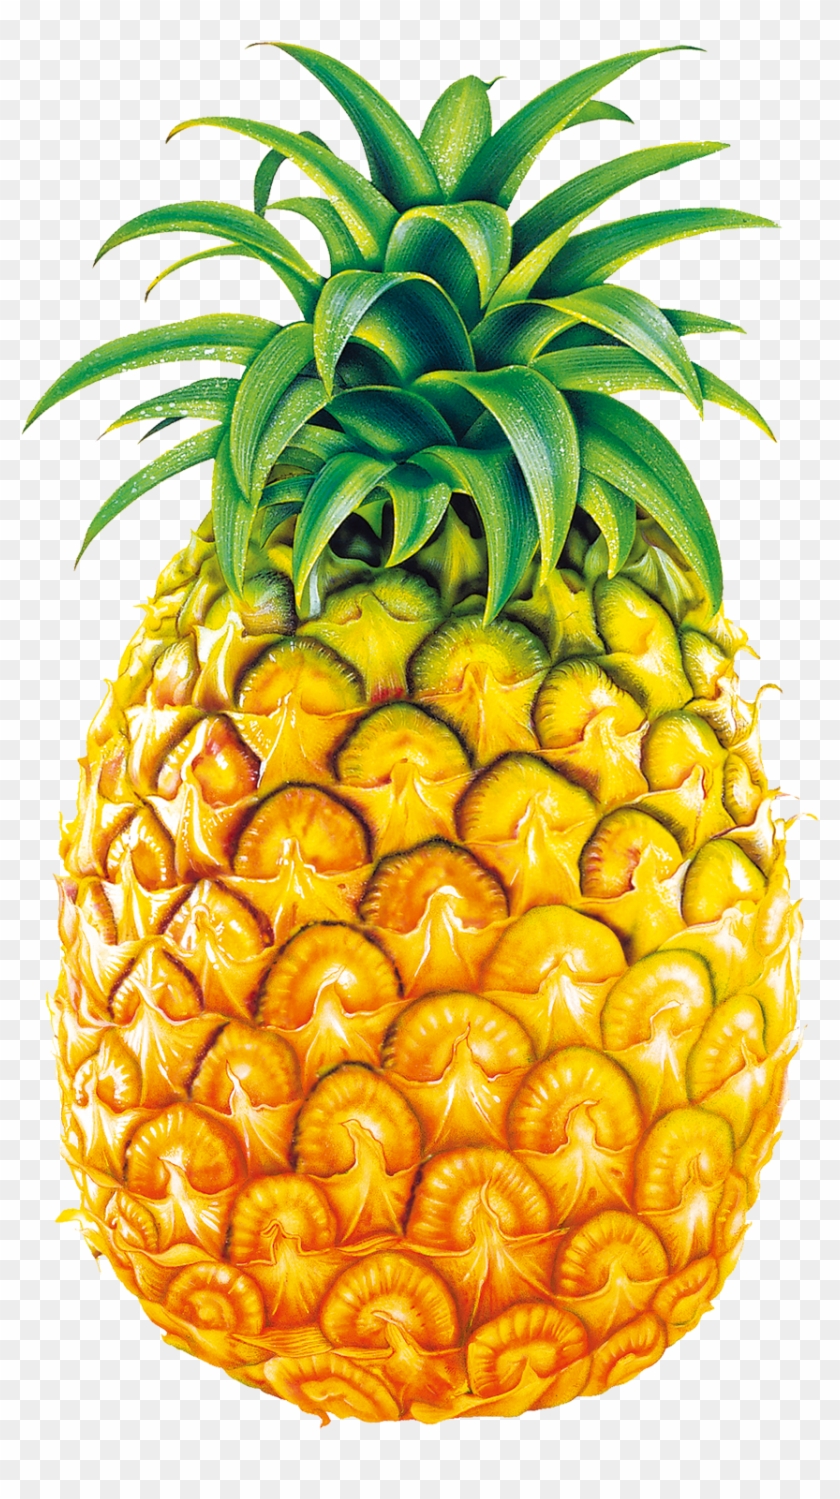 Pineapple Juice Fruit Bromelain Clip Art - Legend Of Pineapple Short Story #166566